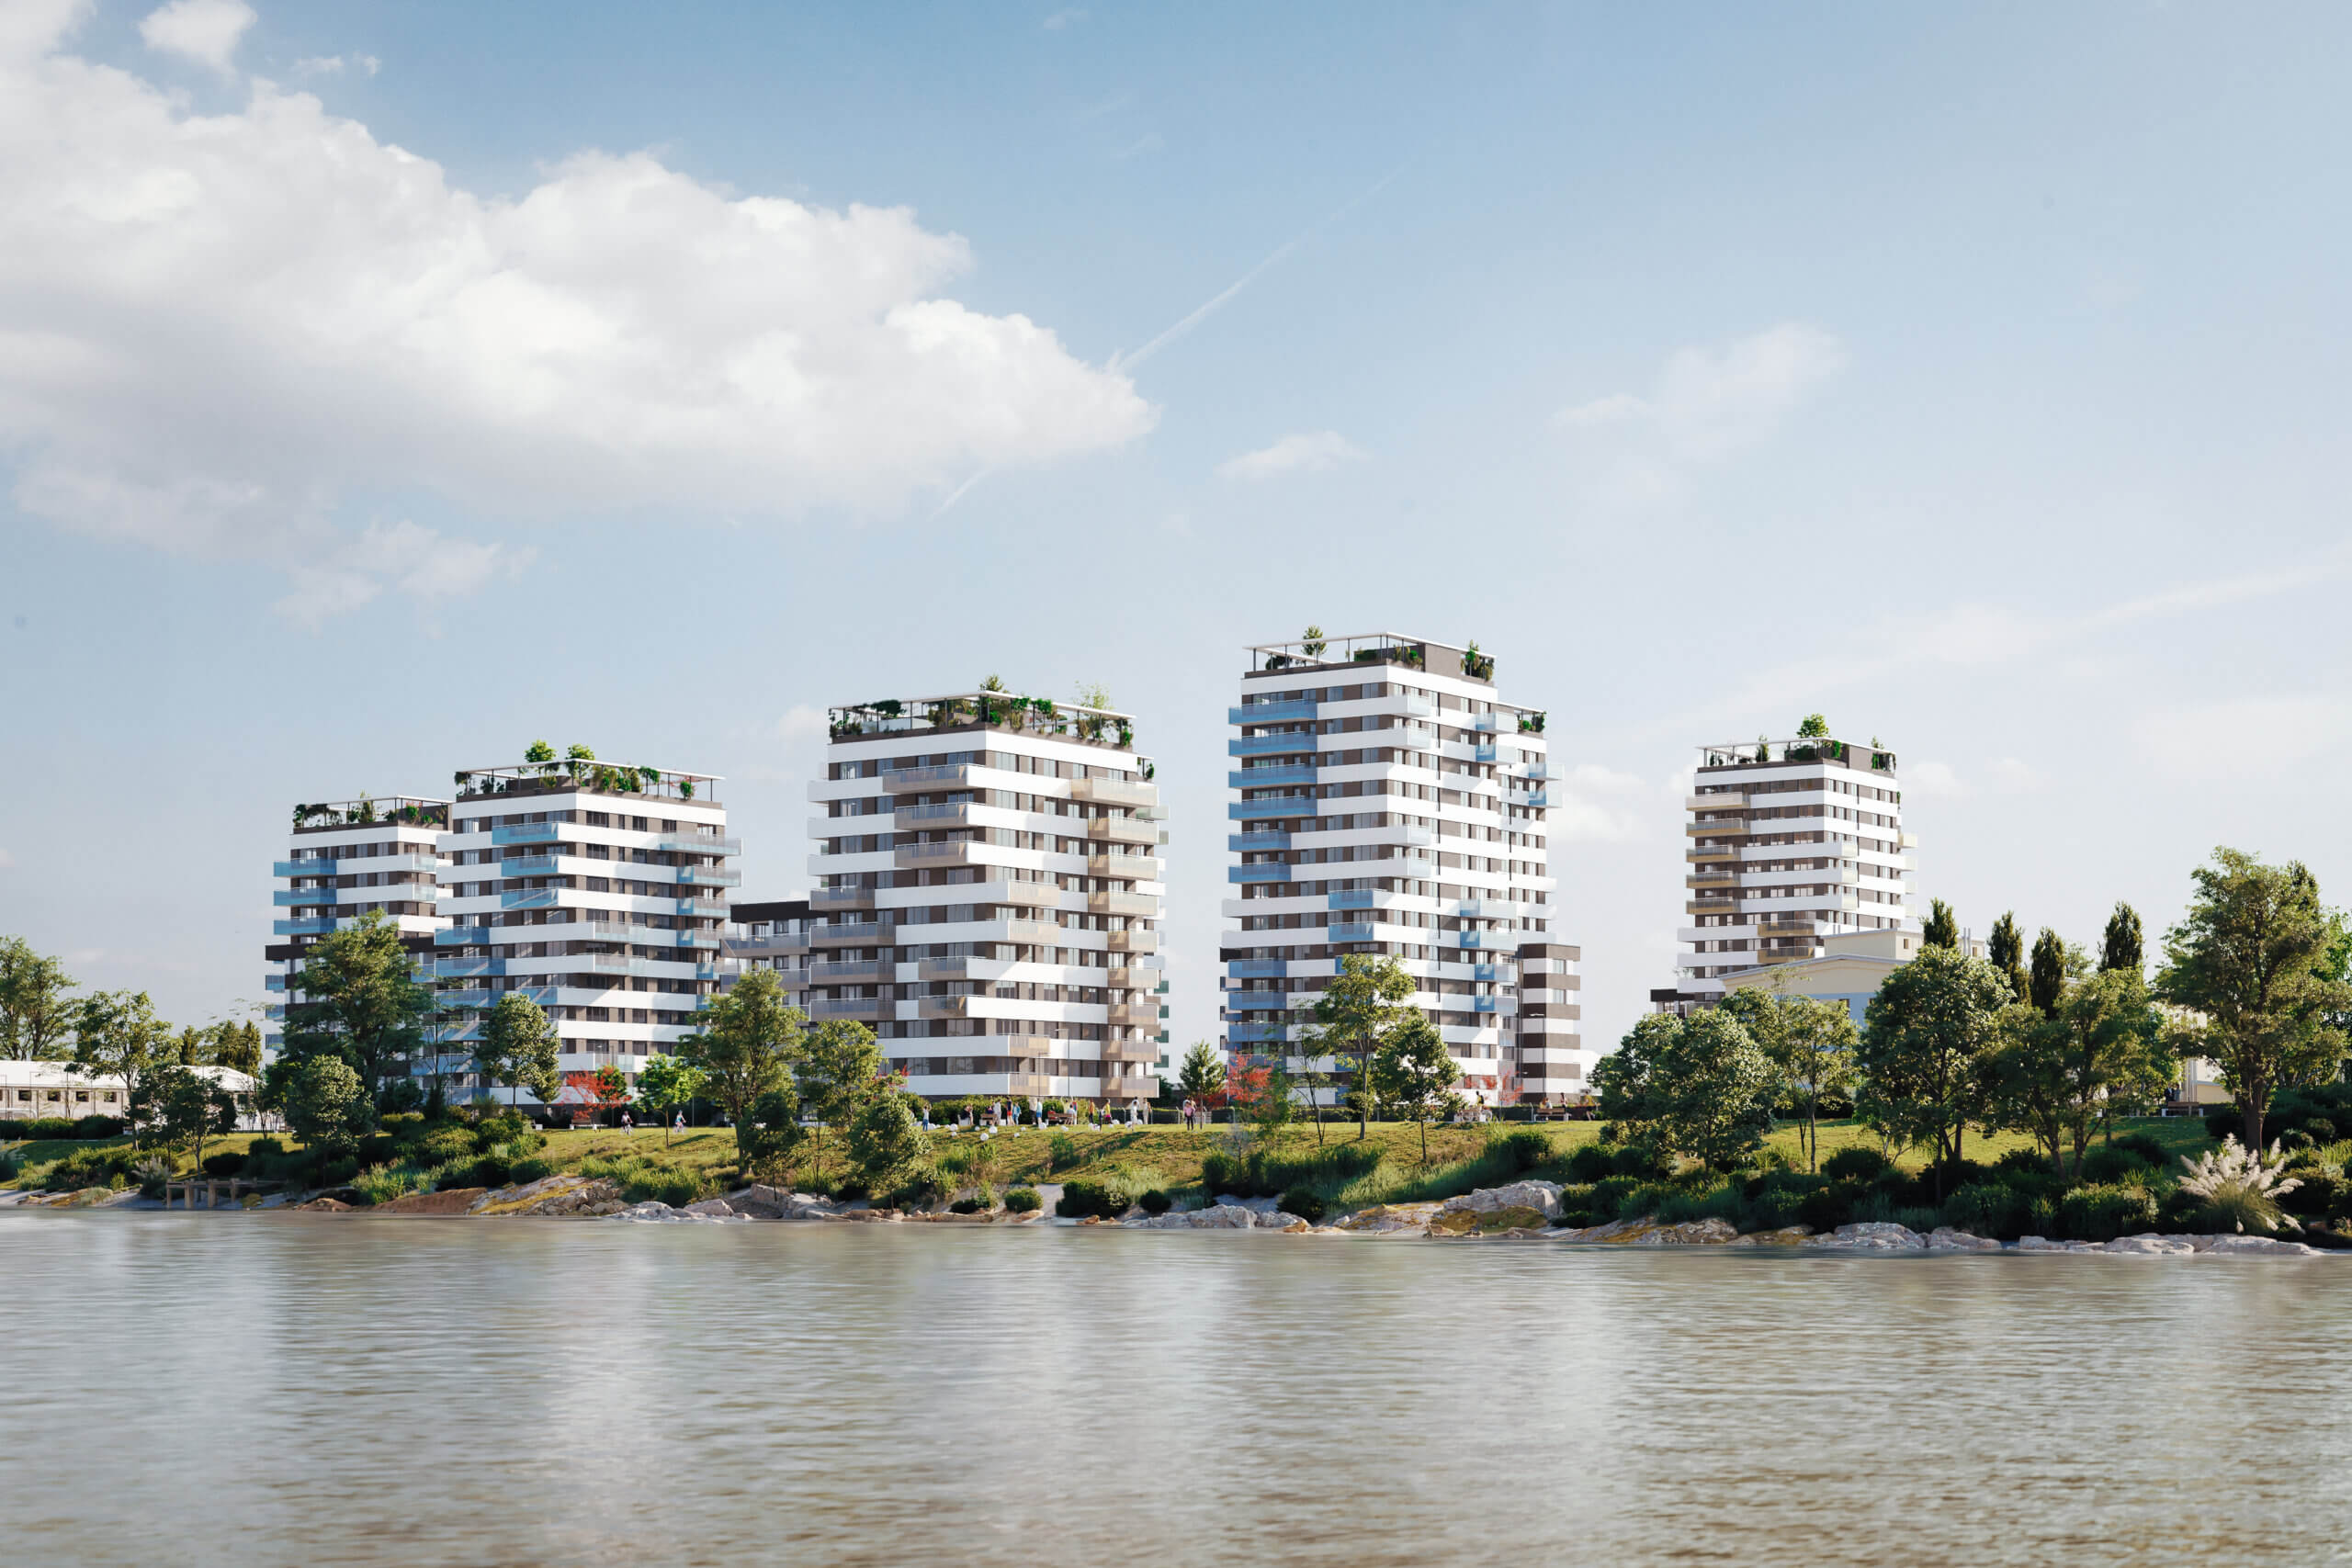 Családbarát, prémium lakópark épül közvetlenül a Duna-parton!